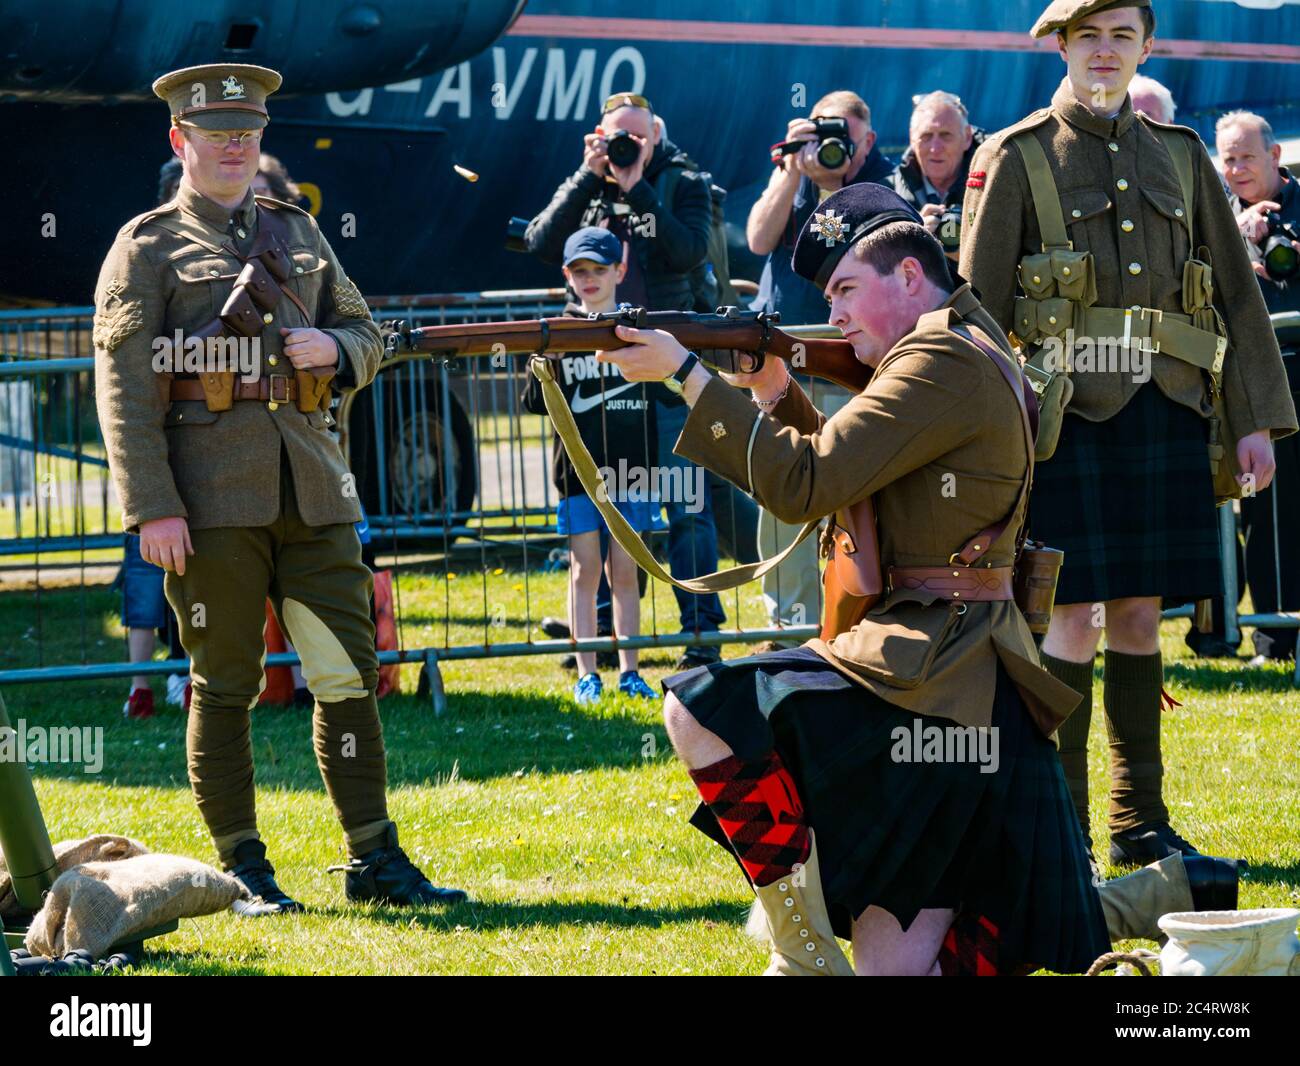 Schottische Soldaten des 1. Weltkrieges im Kilt-Schussgewehr, Demonstration der Kriegserfahrungen, East Fortune, East Lothian, Schottland, Großbritannien Stockfoto